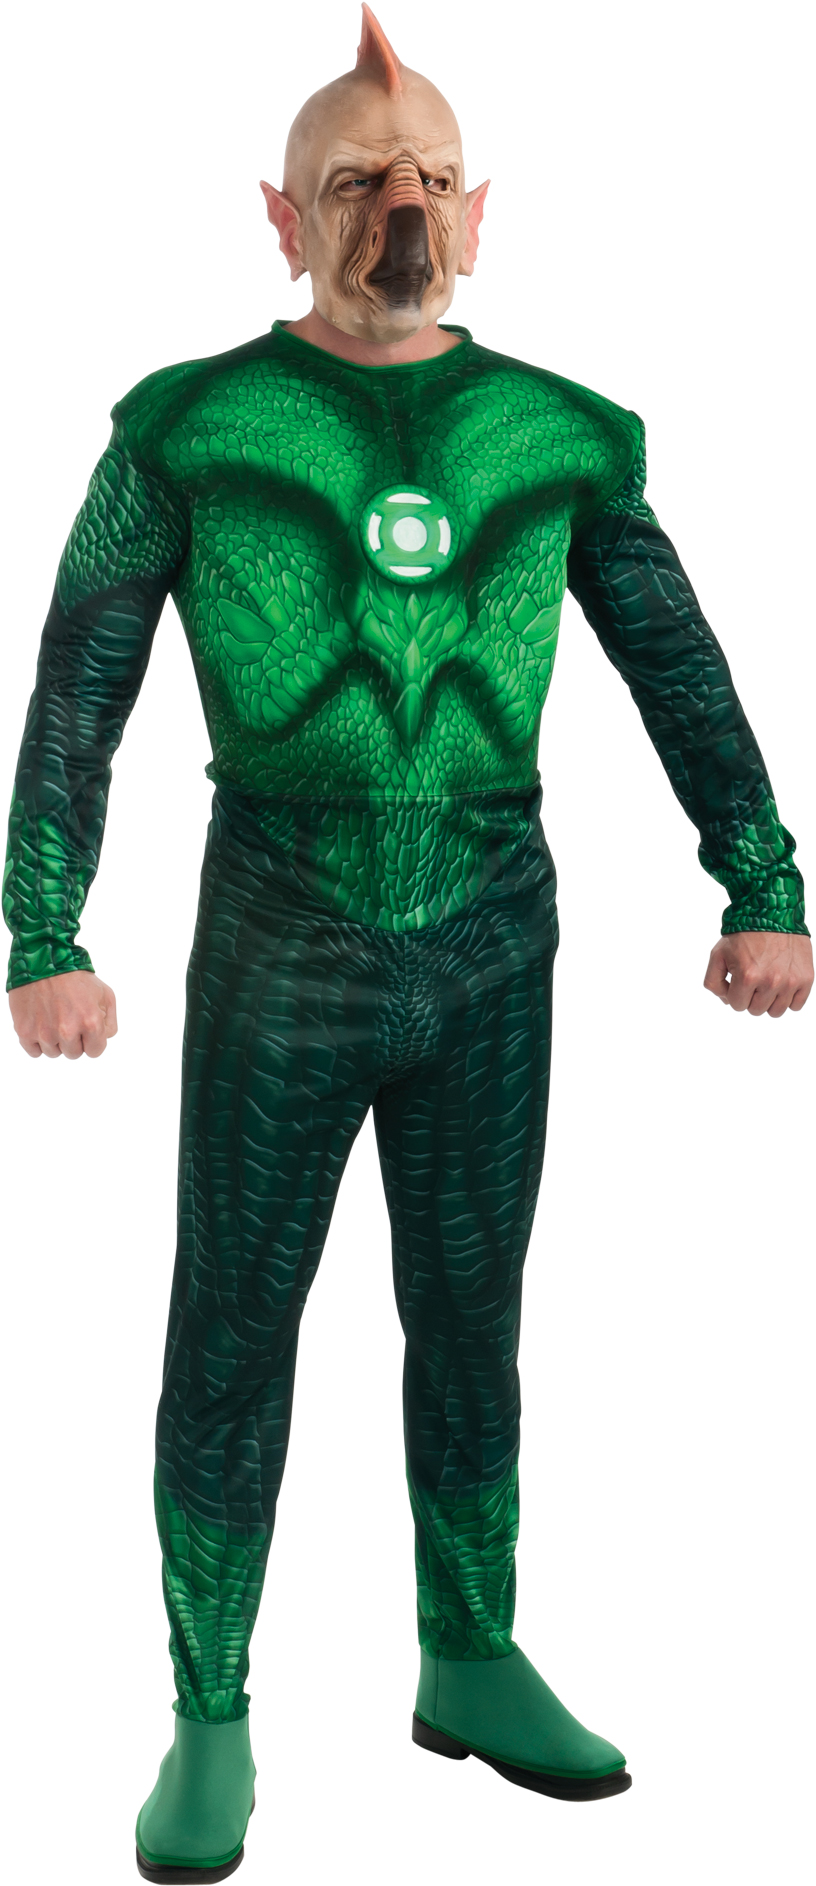 Green Lantern Costume For Women